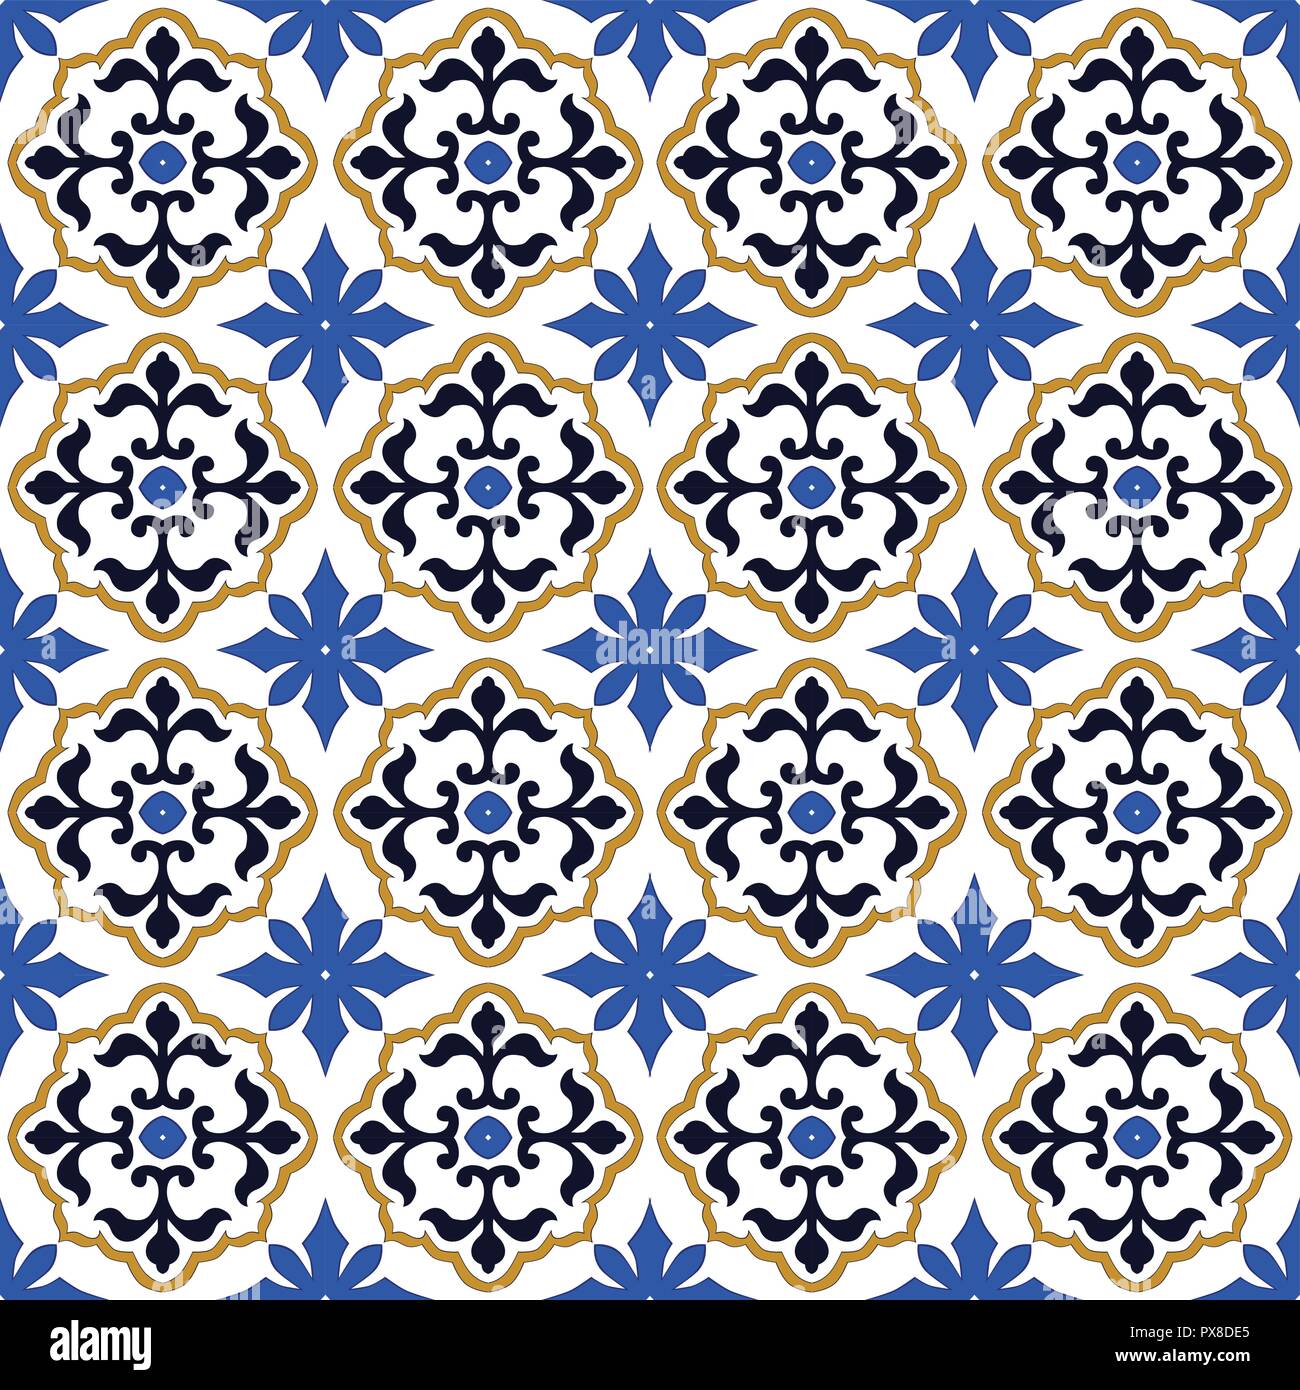 Patrón de estilo español, utilizado habitualmente en los azulejos en España, Portugal y otros países mediterráneos Ilustración del Vector